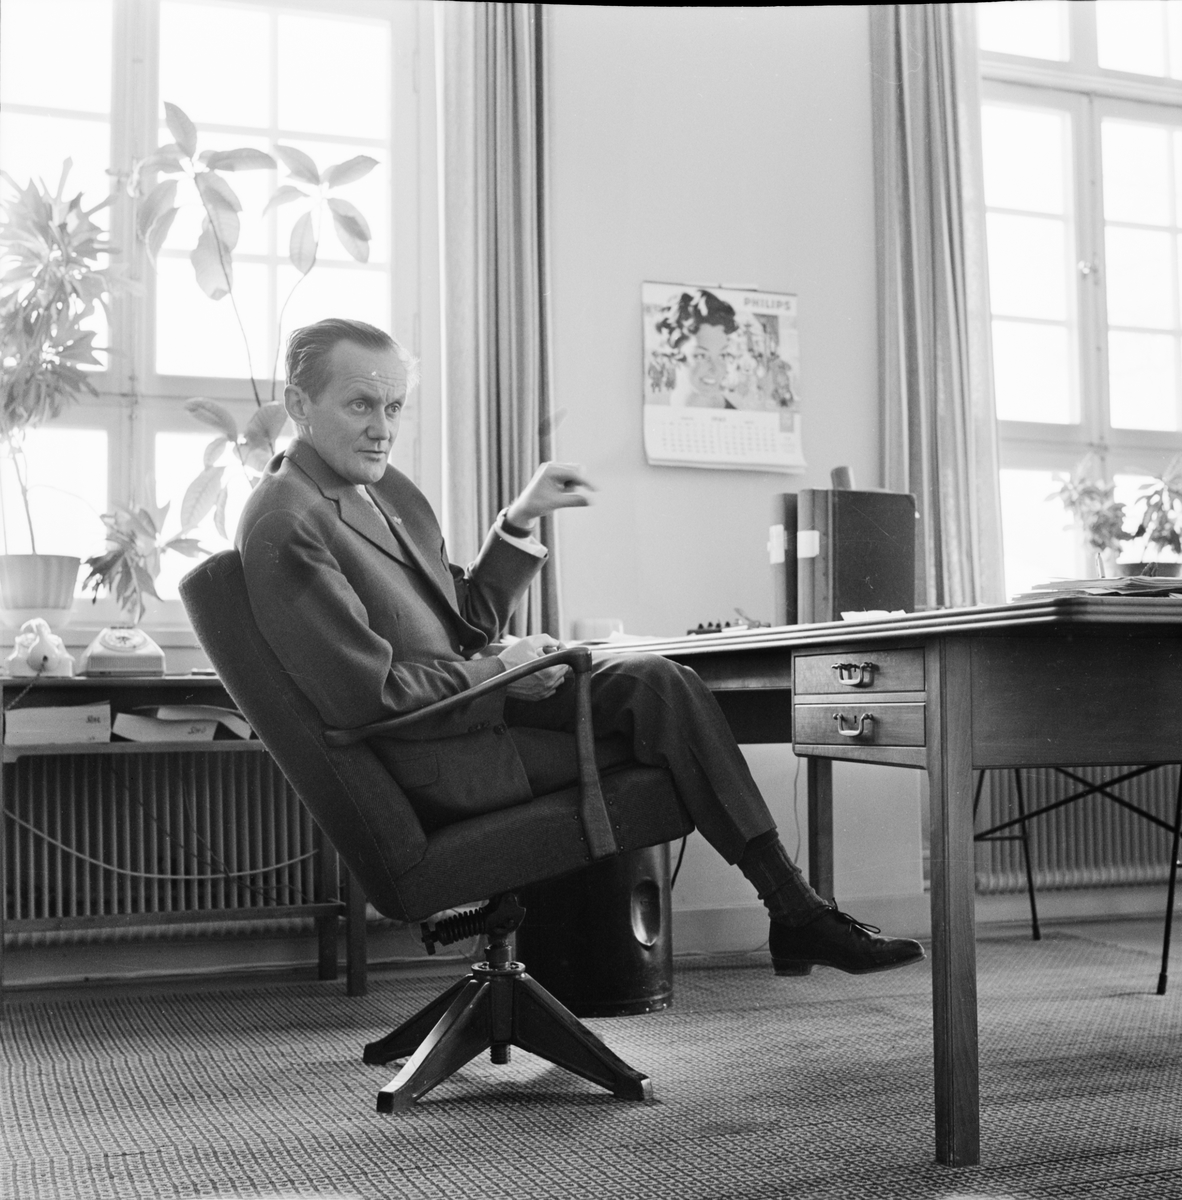 Universitetet - kursledningen diskuterar utbildning, Uppsala 1963